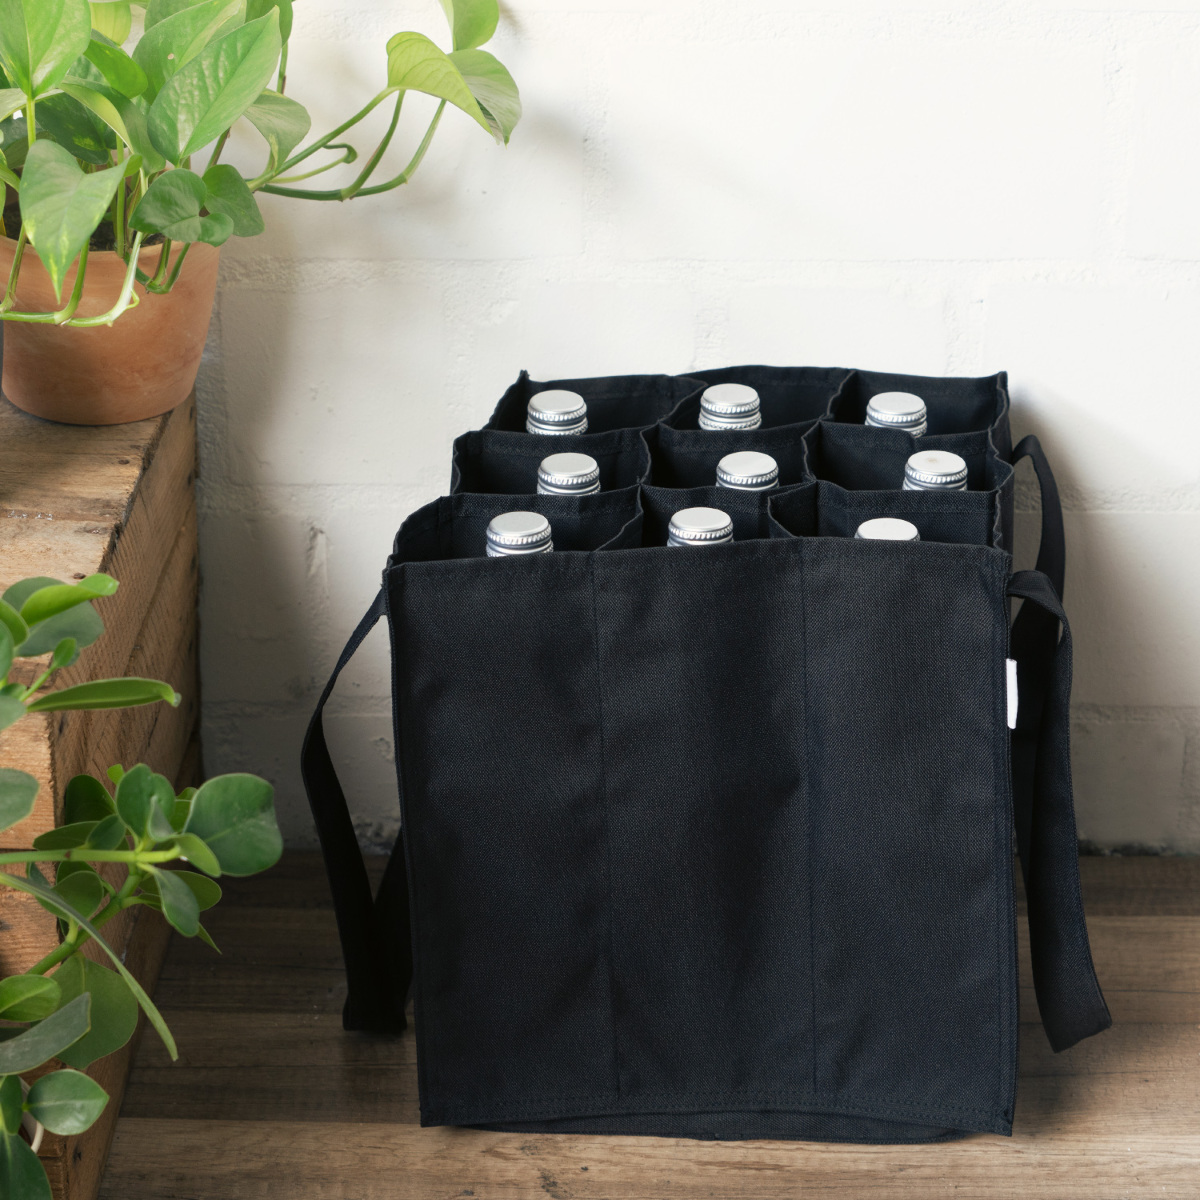 Bottlebag Einkaufstasche Flaschentasche Tasche für 9 Flaschen Träger  9 x1.5L DE 